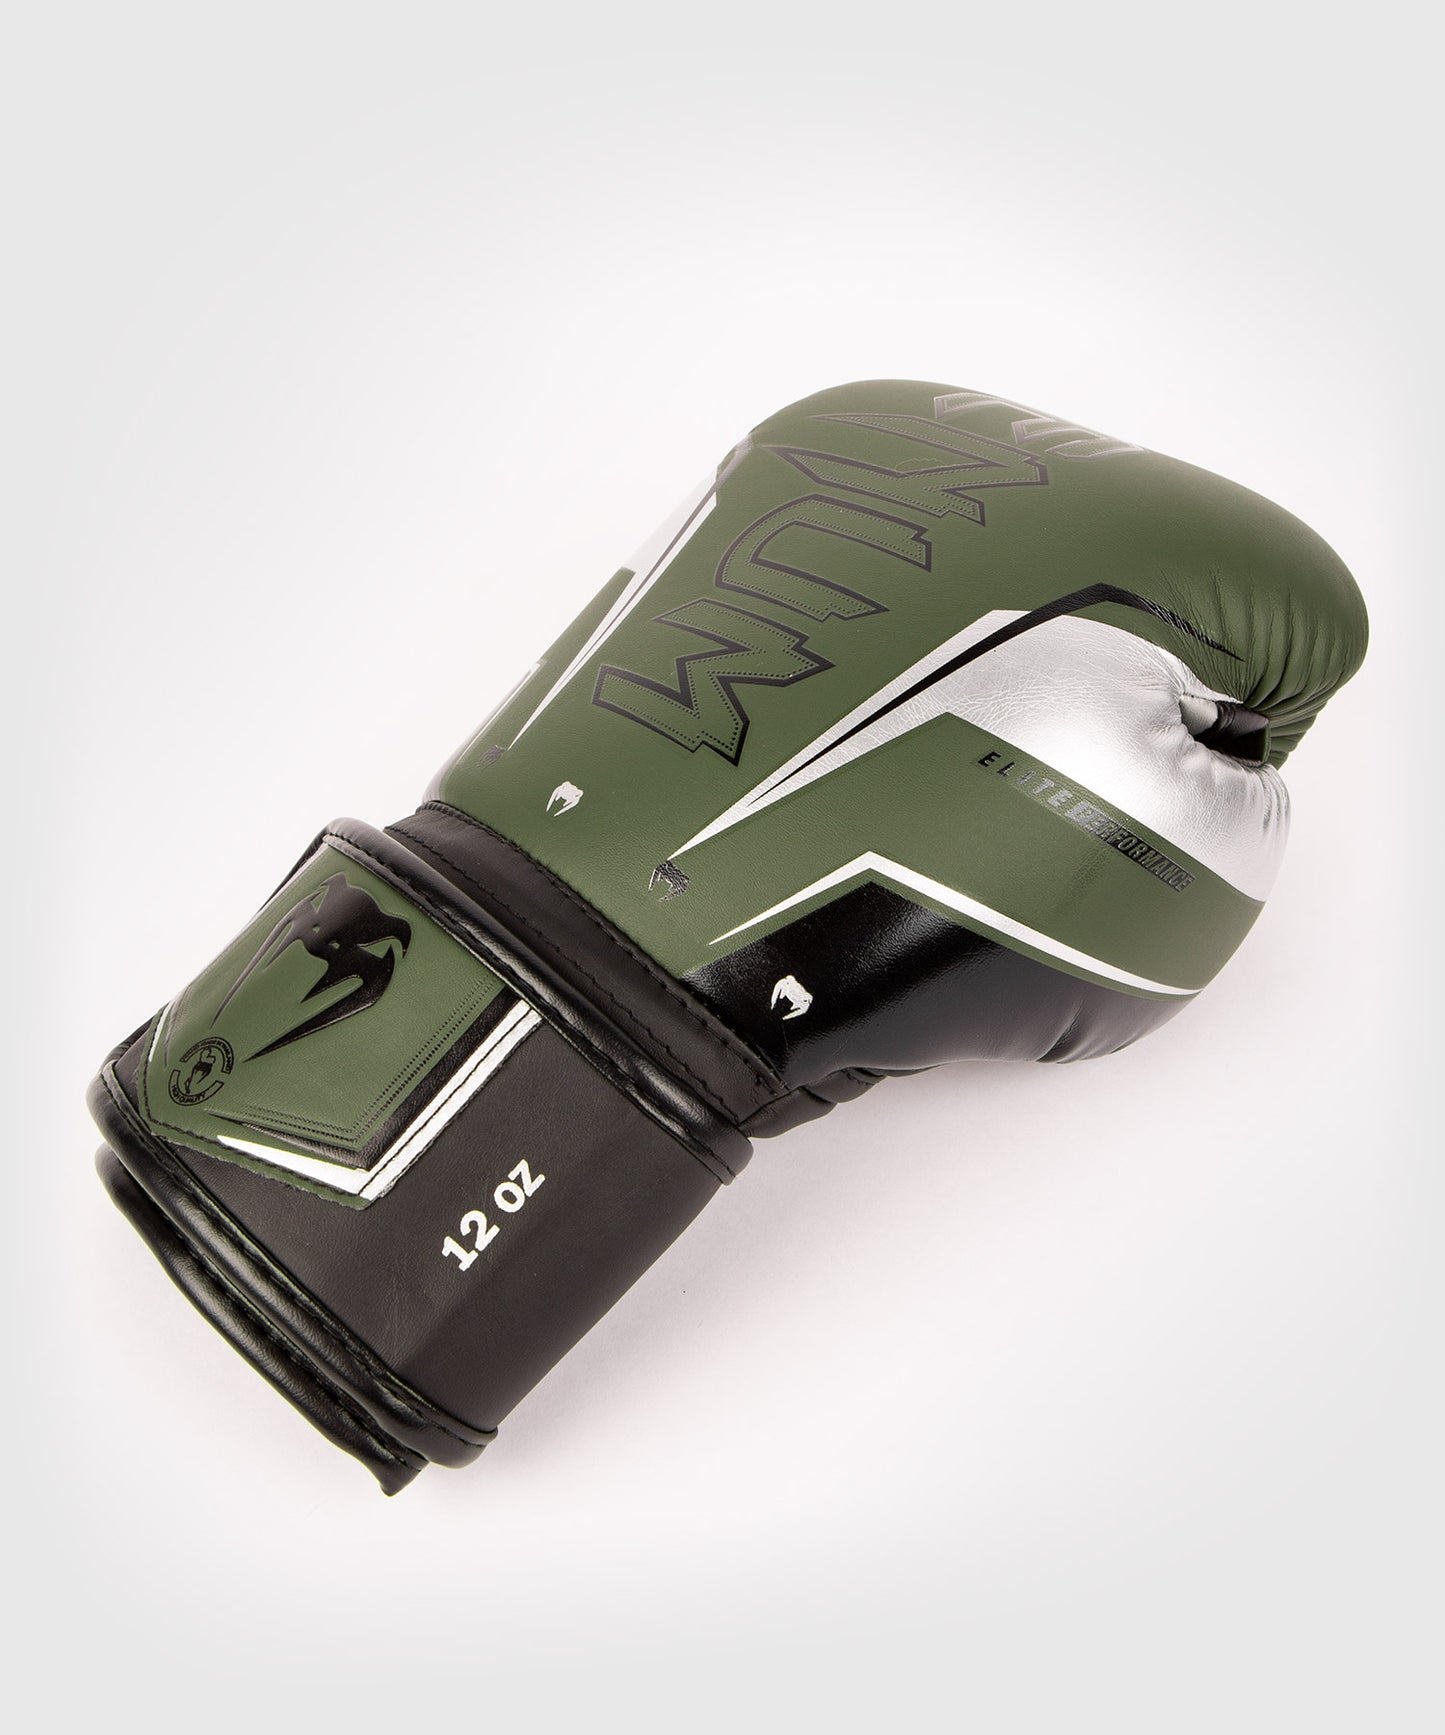 Venum Elite Evo Boxing Gloves - Khaki/Silver